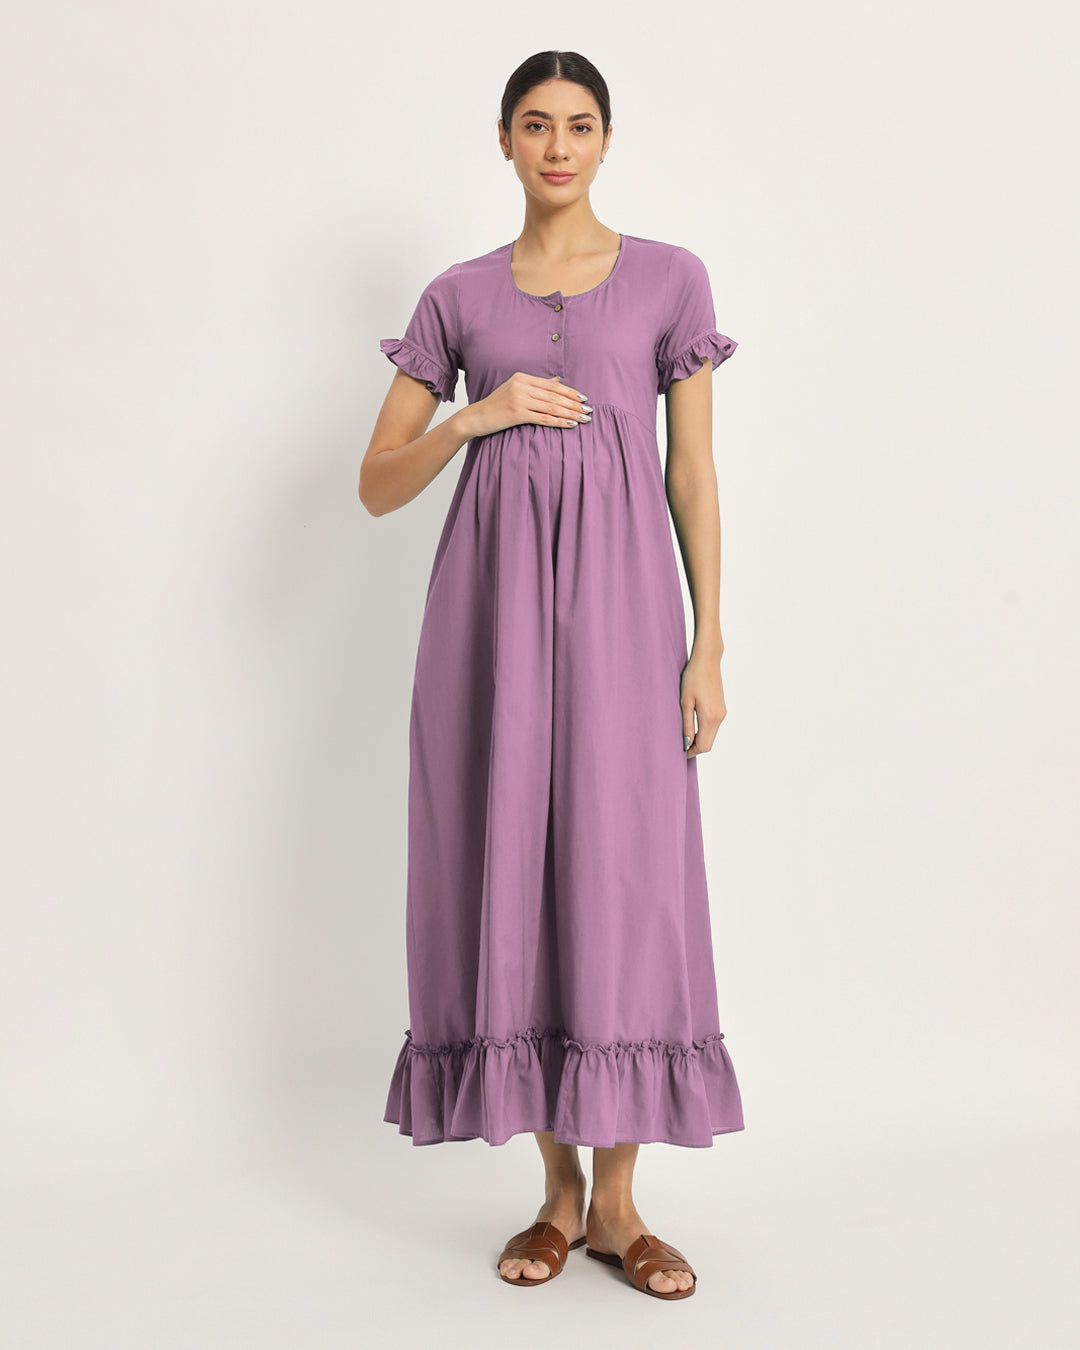 Iris Pink Bumpin' & Stylin' Maternity & Nursing Dress